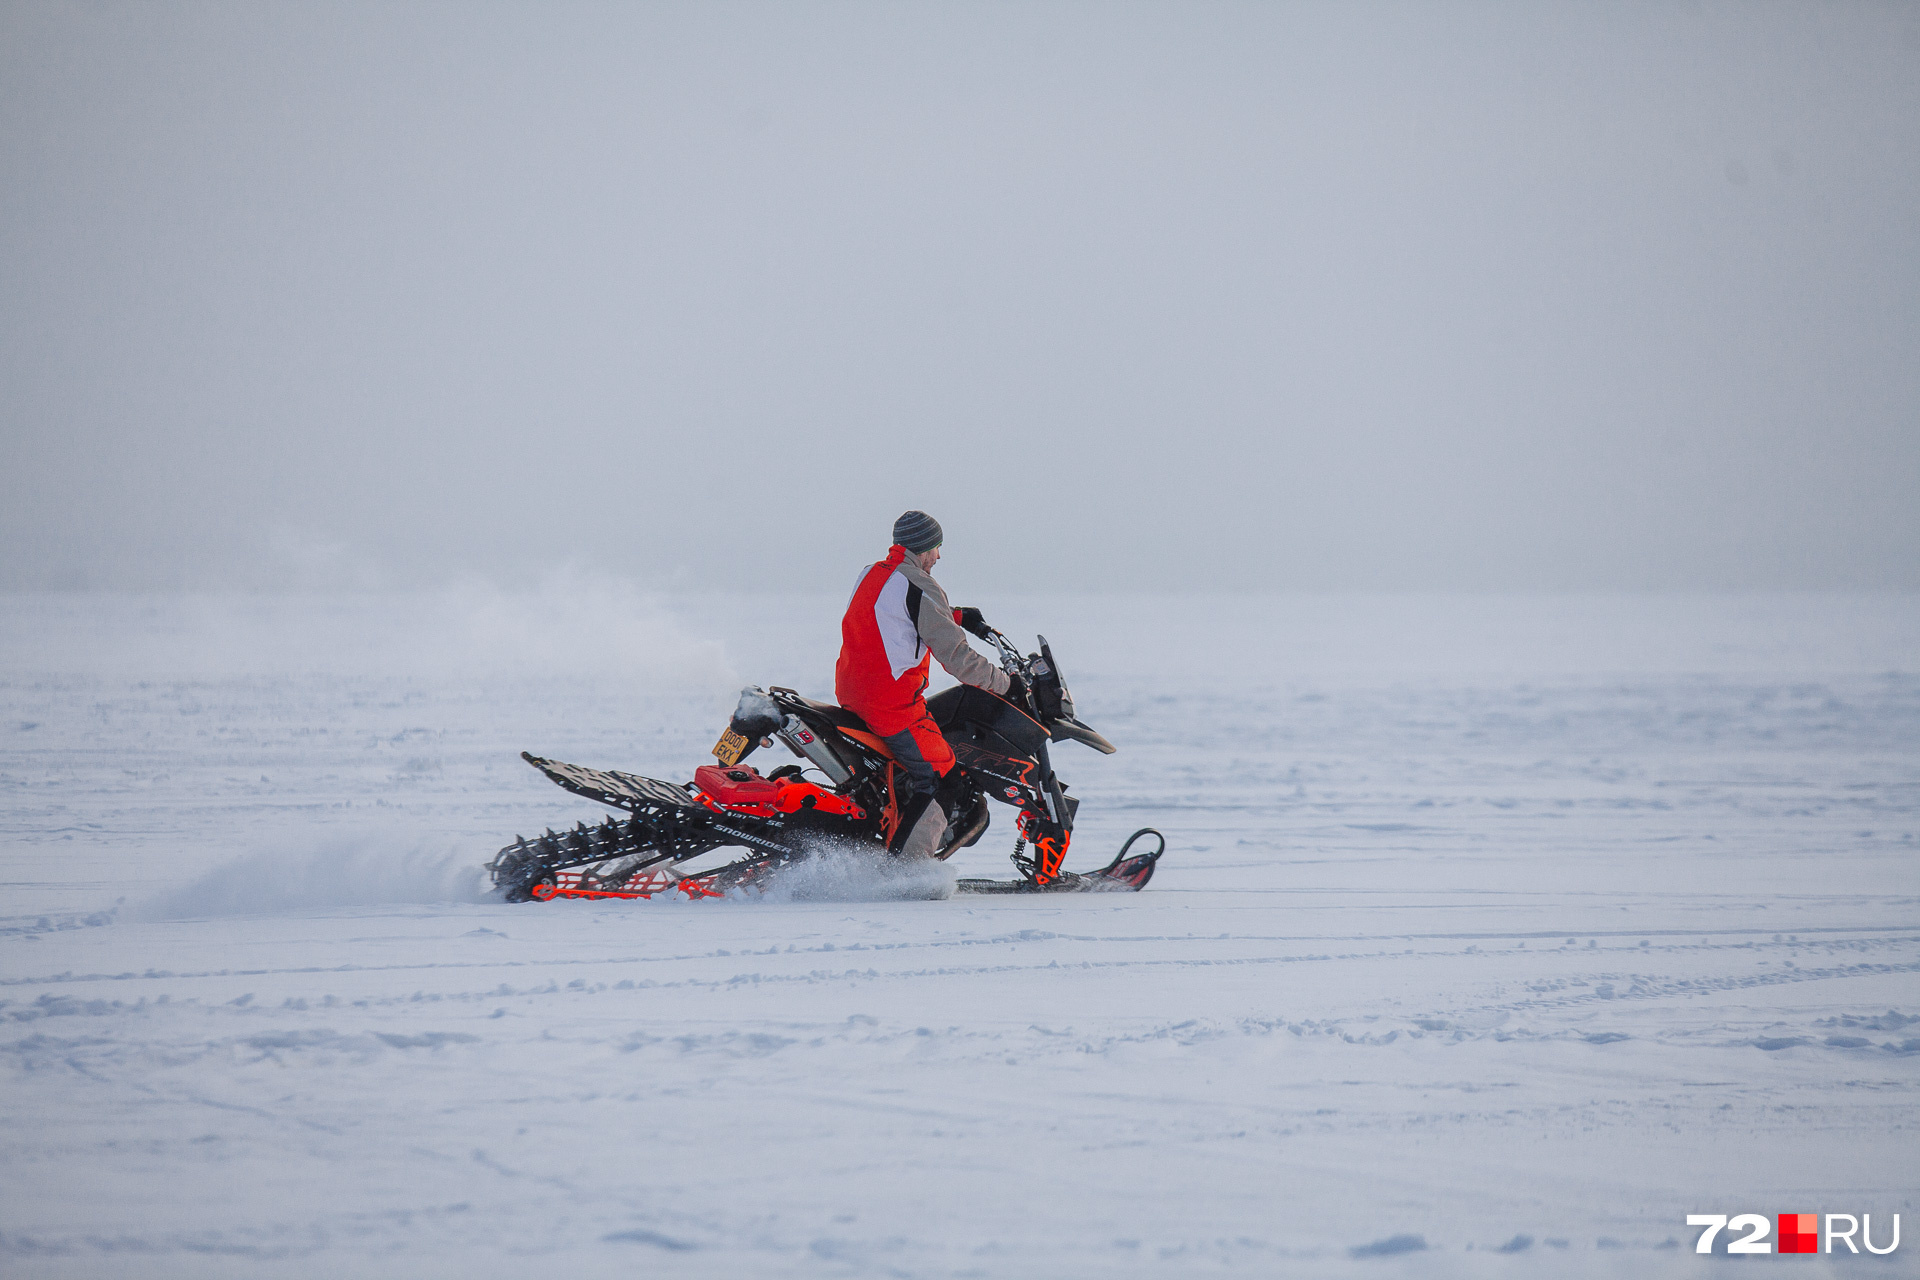 Ездить на нем можно и по льду, но это сложнее и опаснее. Для комфортного вождения сноубайку нужно много снега — хотя бы метр глубиной 